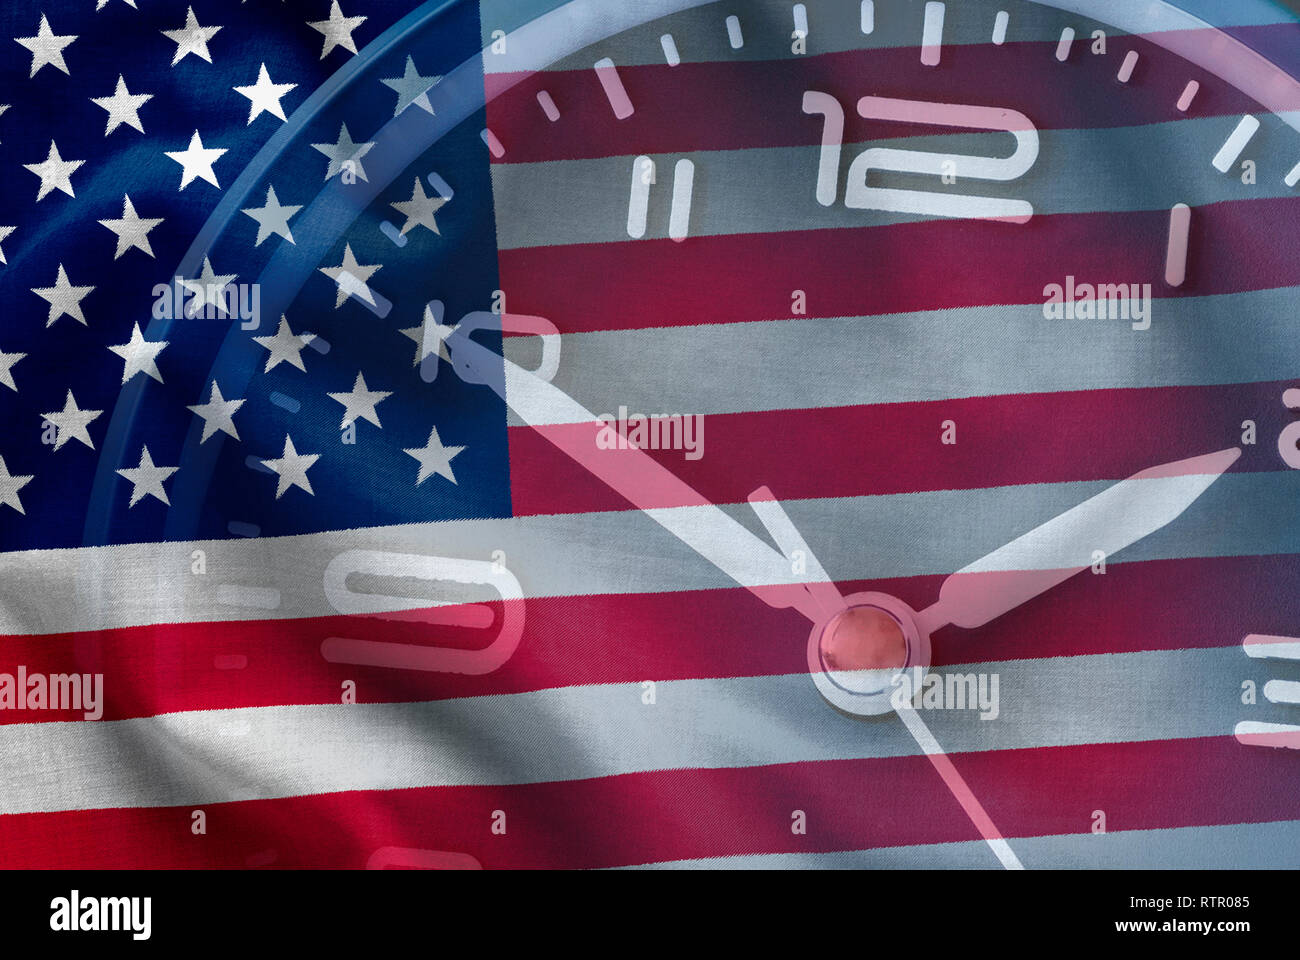 Composito della bandiera americana, a stelle e strisce, vecchia gloria, con un orologio in una immagine concettuale Foto Stock